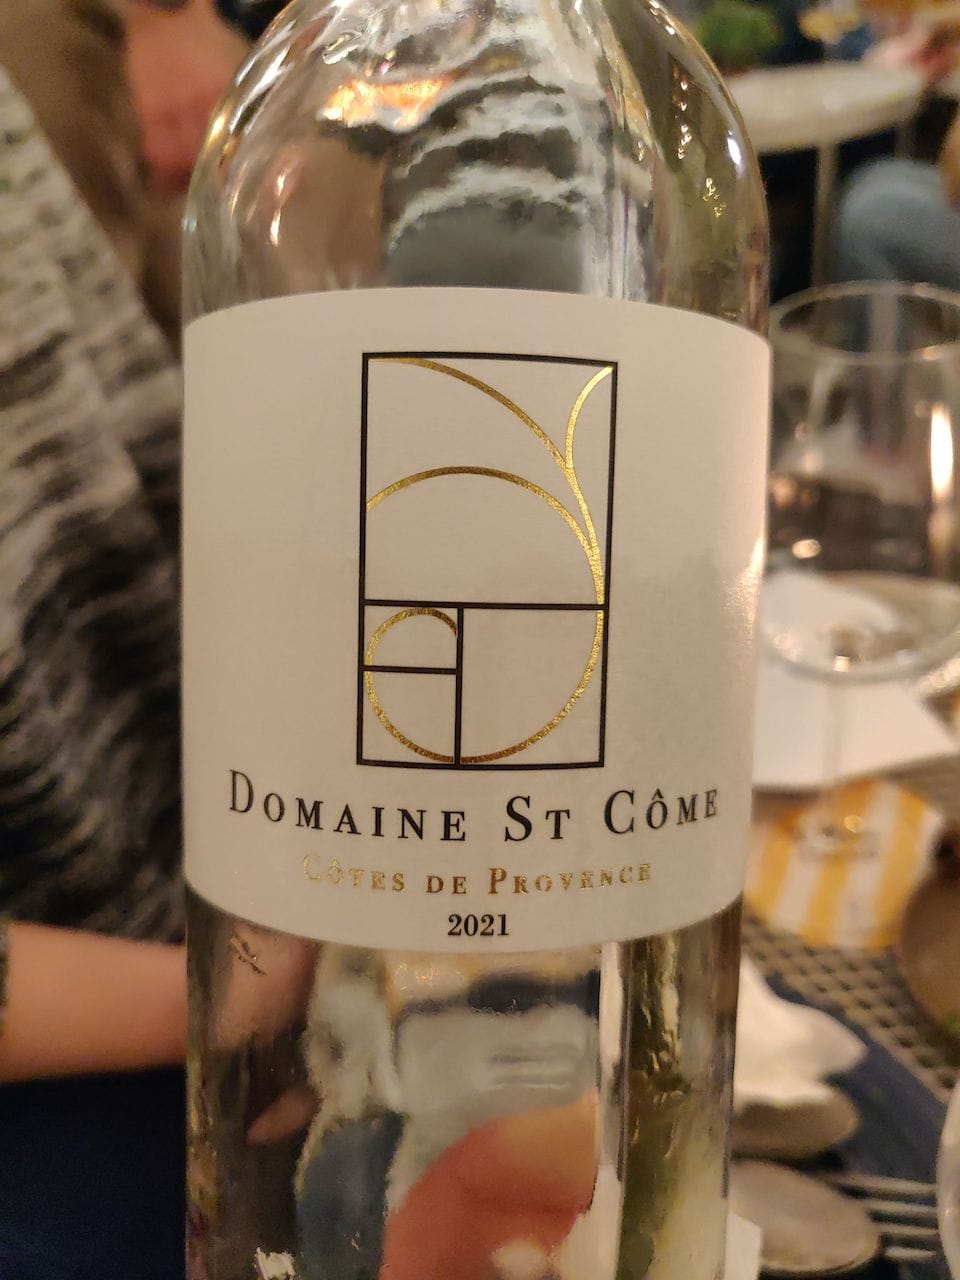 L'étiquette d'une bouteille de rosé (vide). On y lit: Domaine St Côme, Côtes de Provence 2021